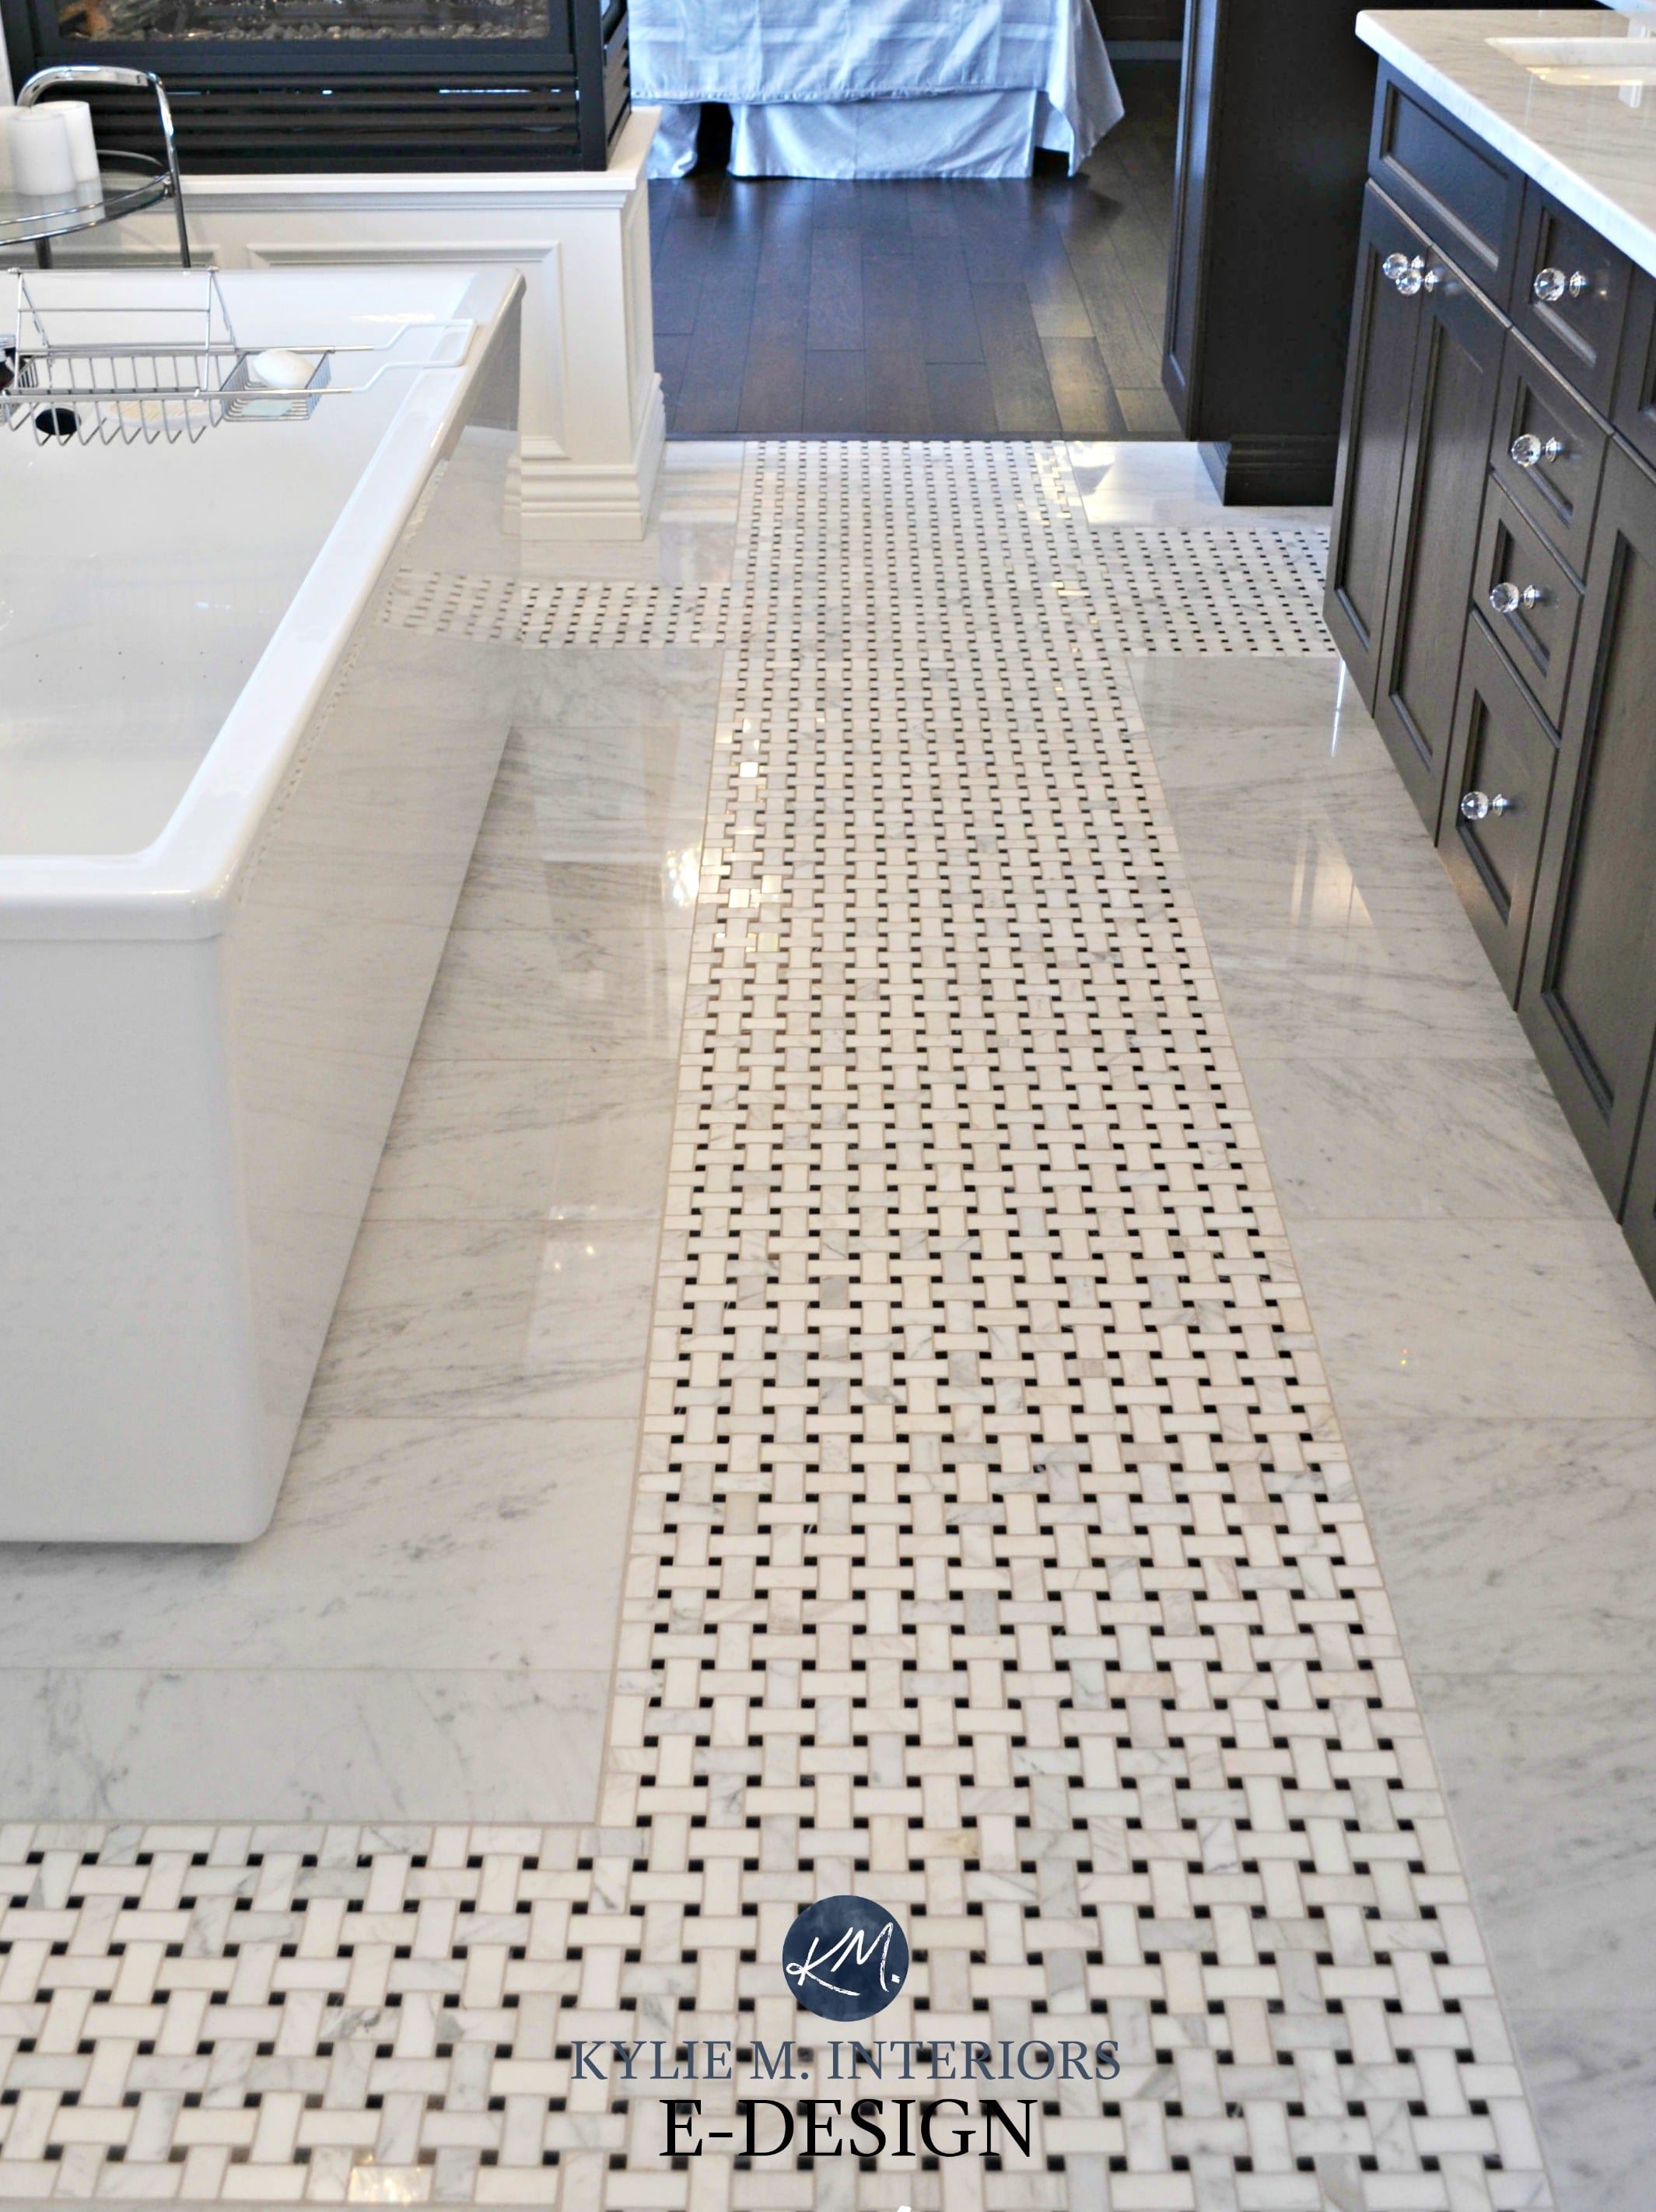 Ensuite bathroom, marble mosaic basketweave tile on floor with espresso